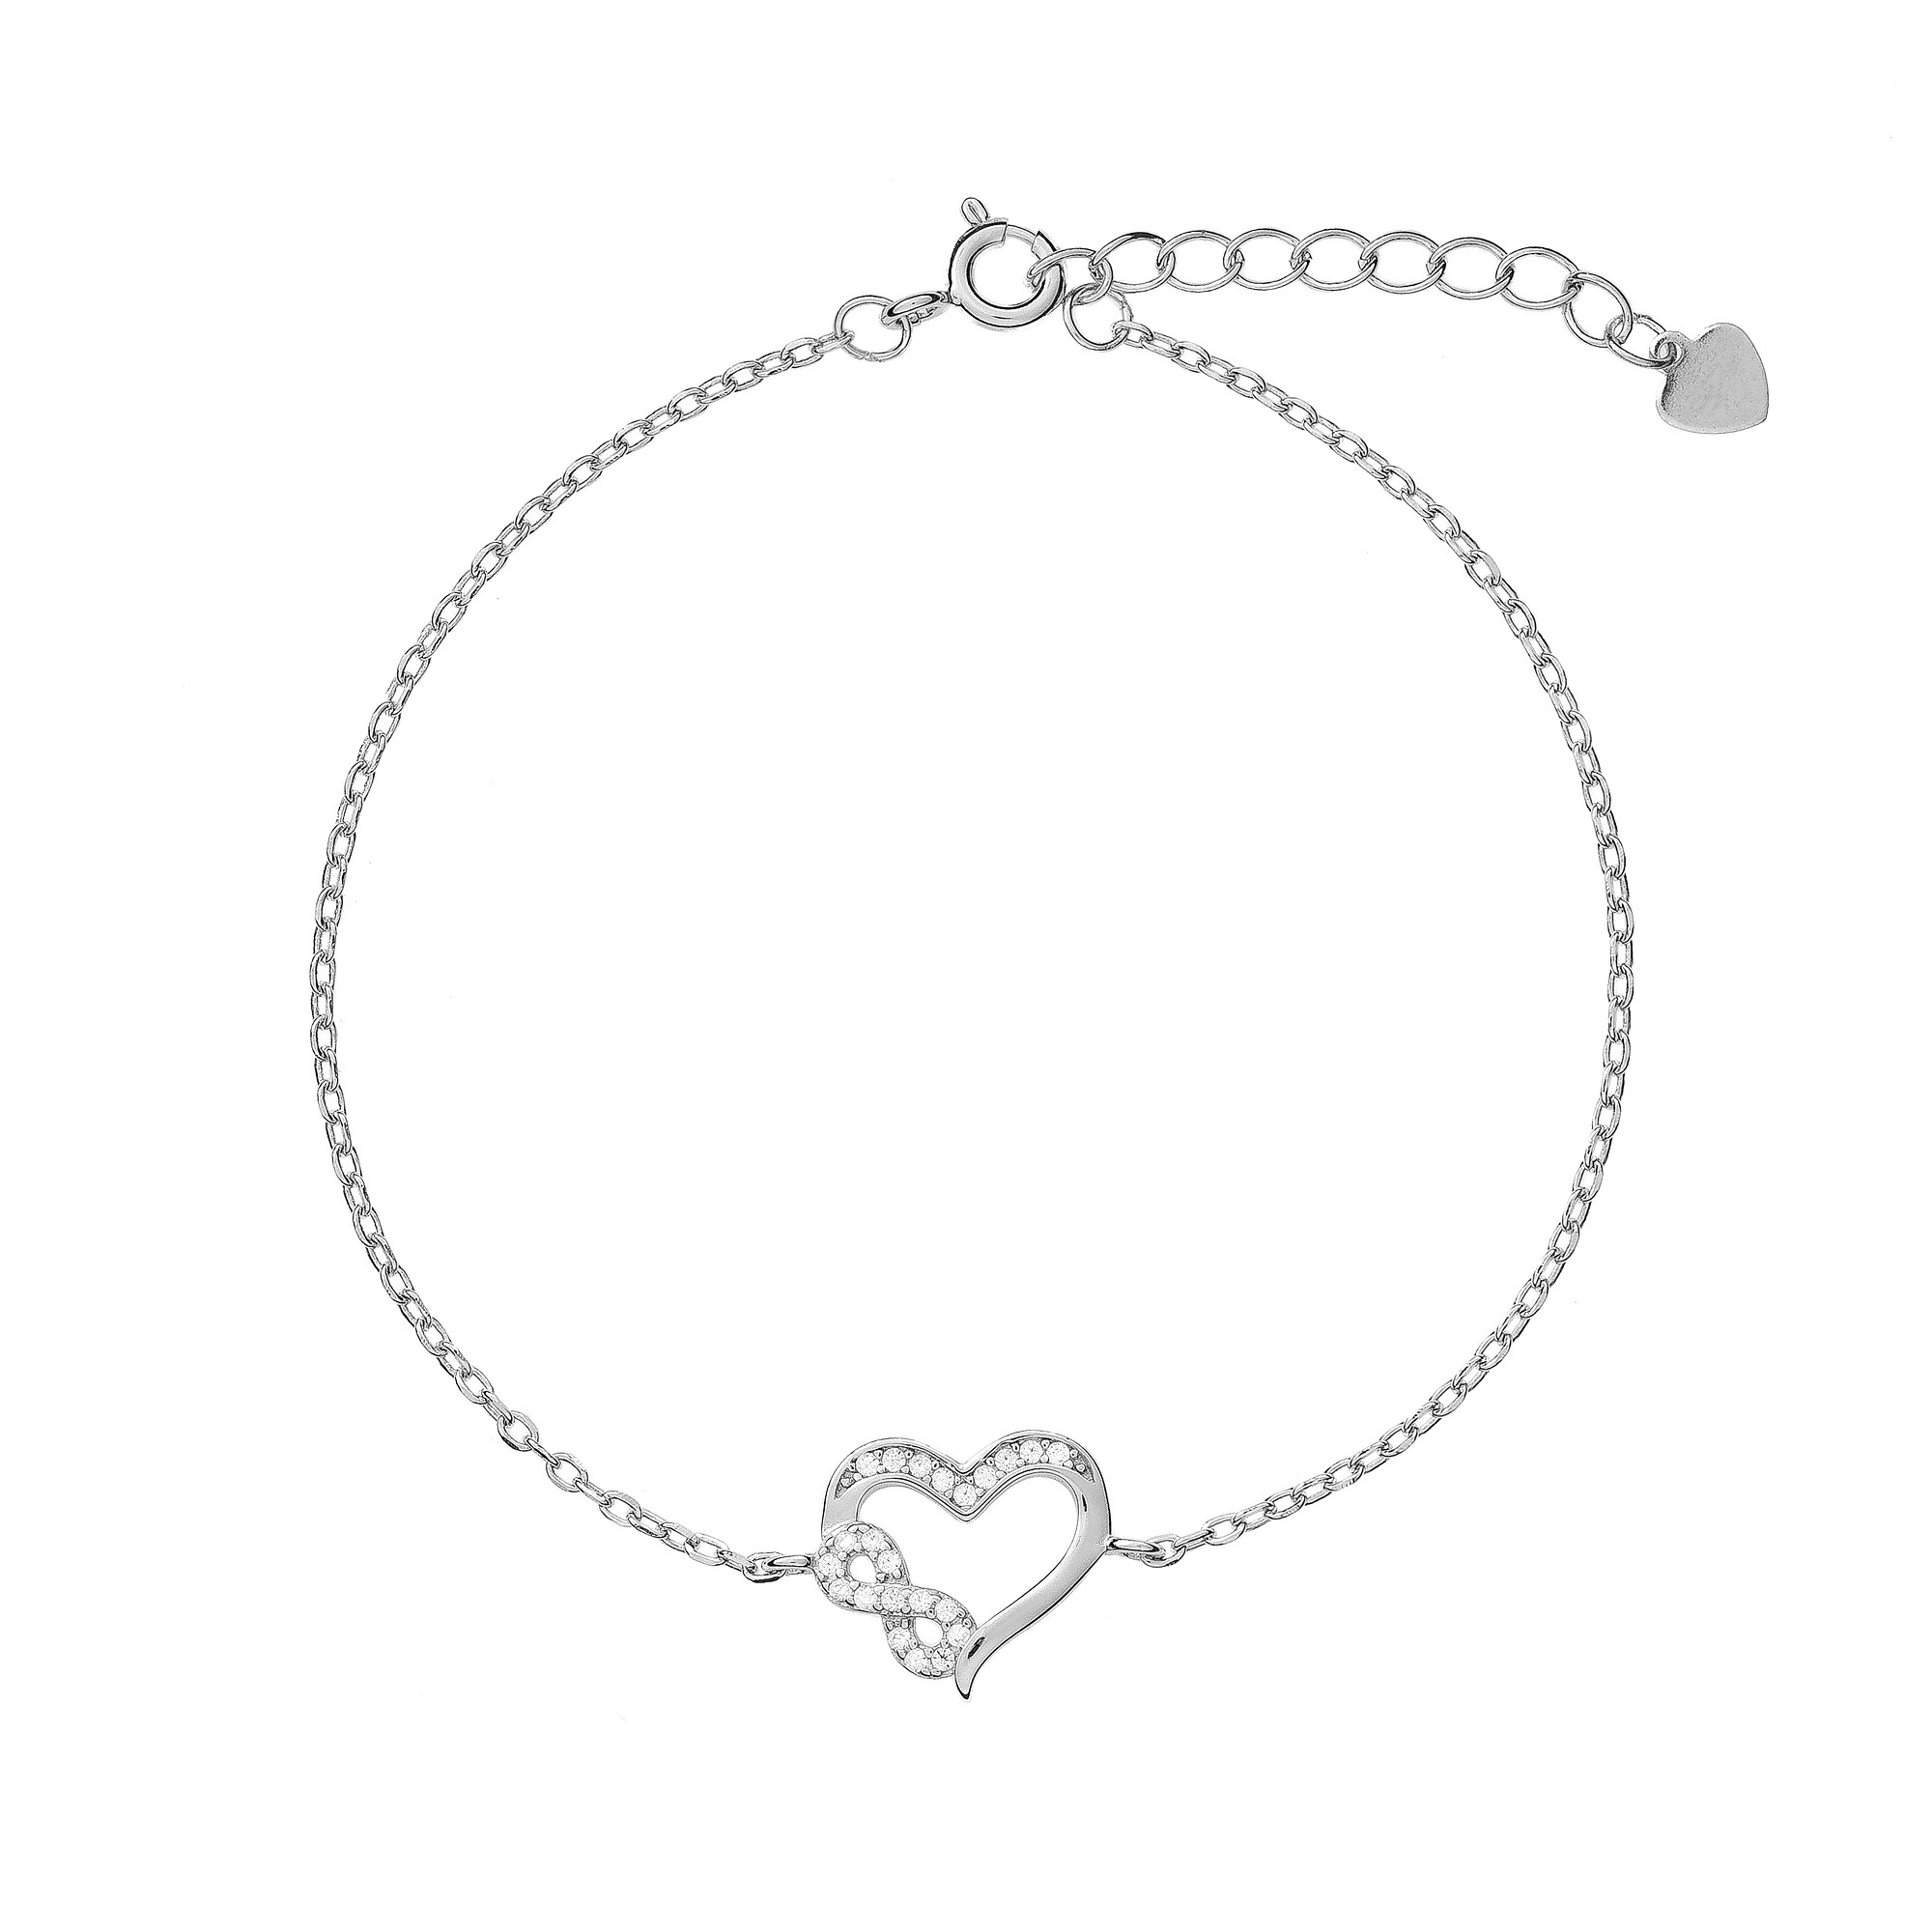 AGAIN Jewelry Něžný stříbrný náramek Infinity Love AJNR0017